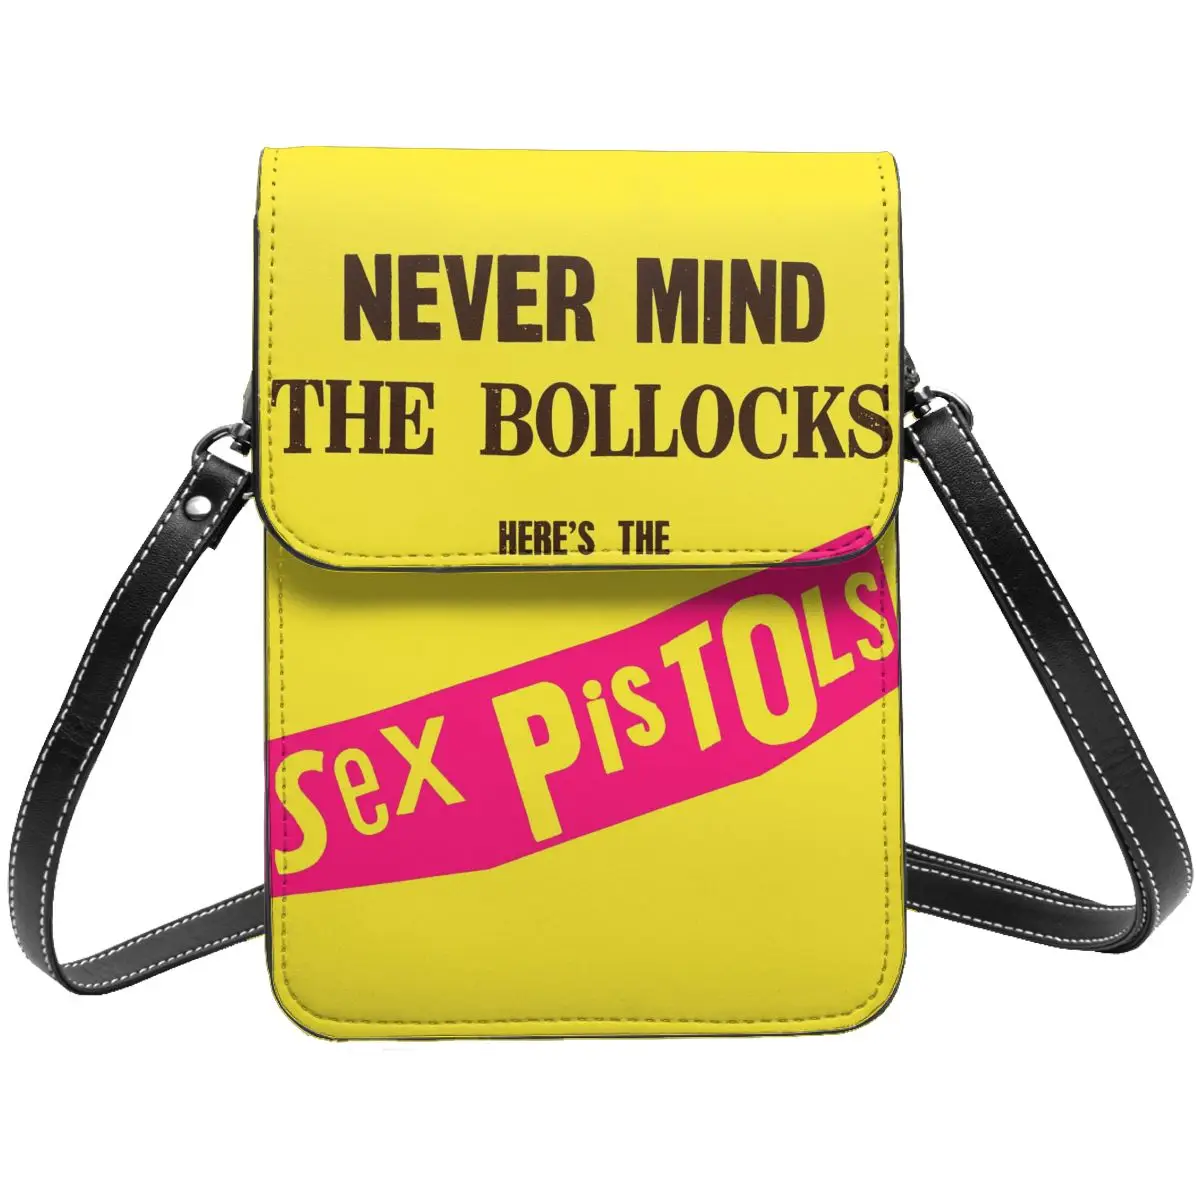 

Сексуальные пистолеты, ремень, сумка для сотового телефона, кожаная стильная унисекс мини сумка через плечо, легкая фотосумка